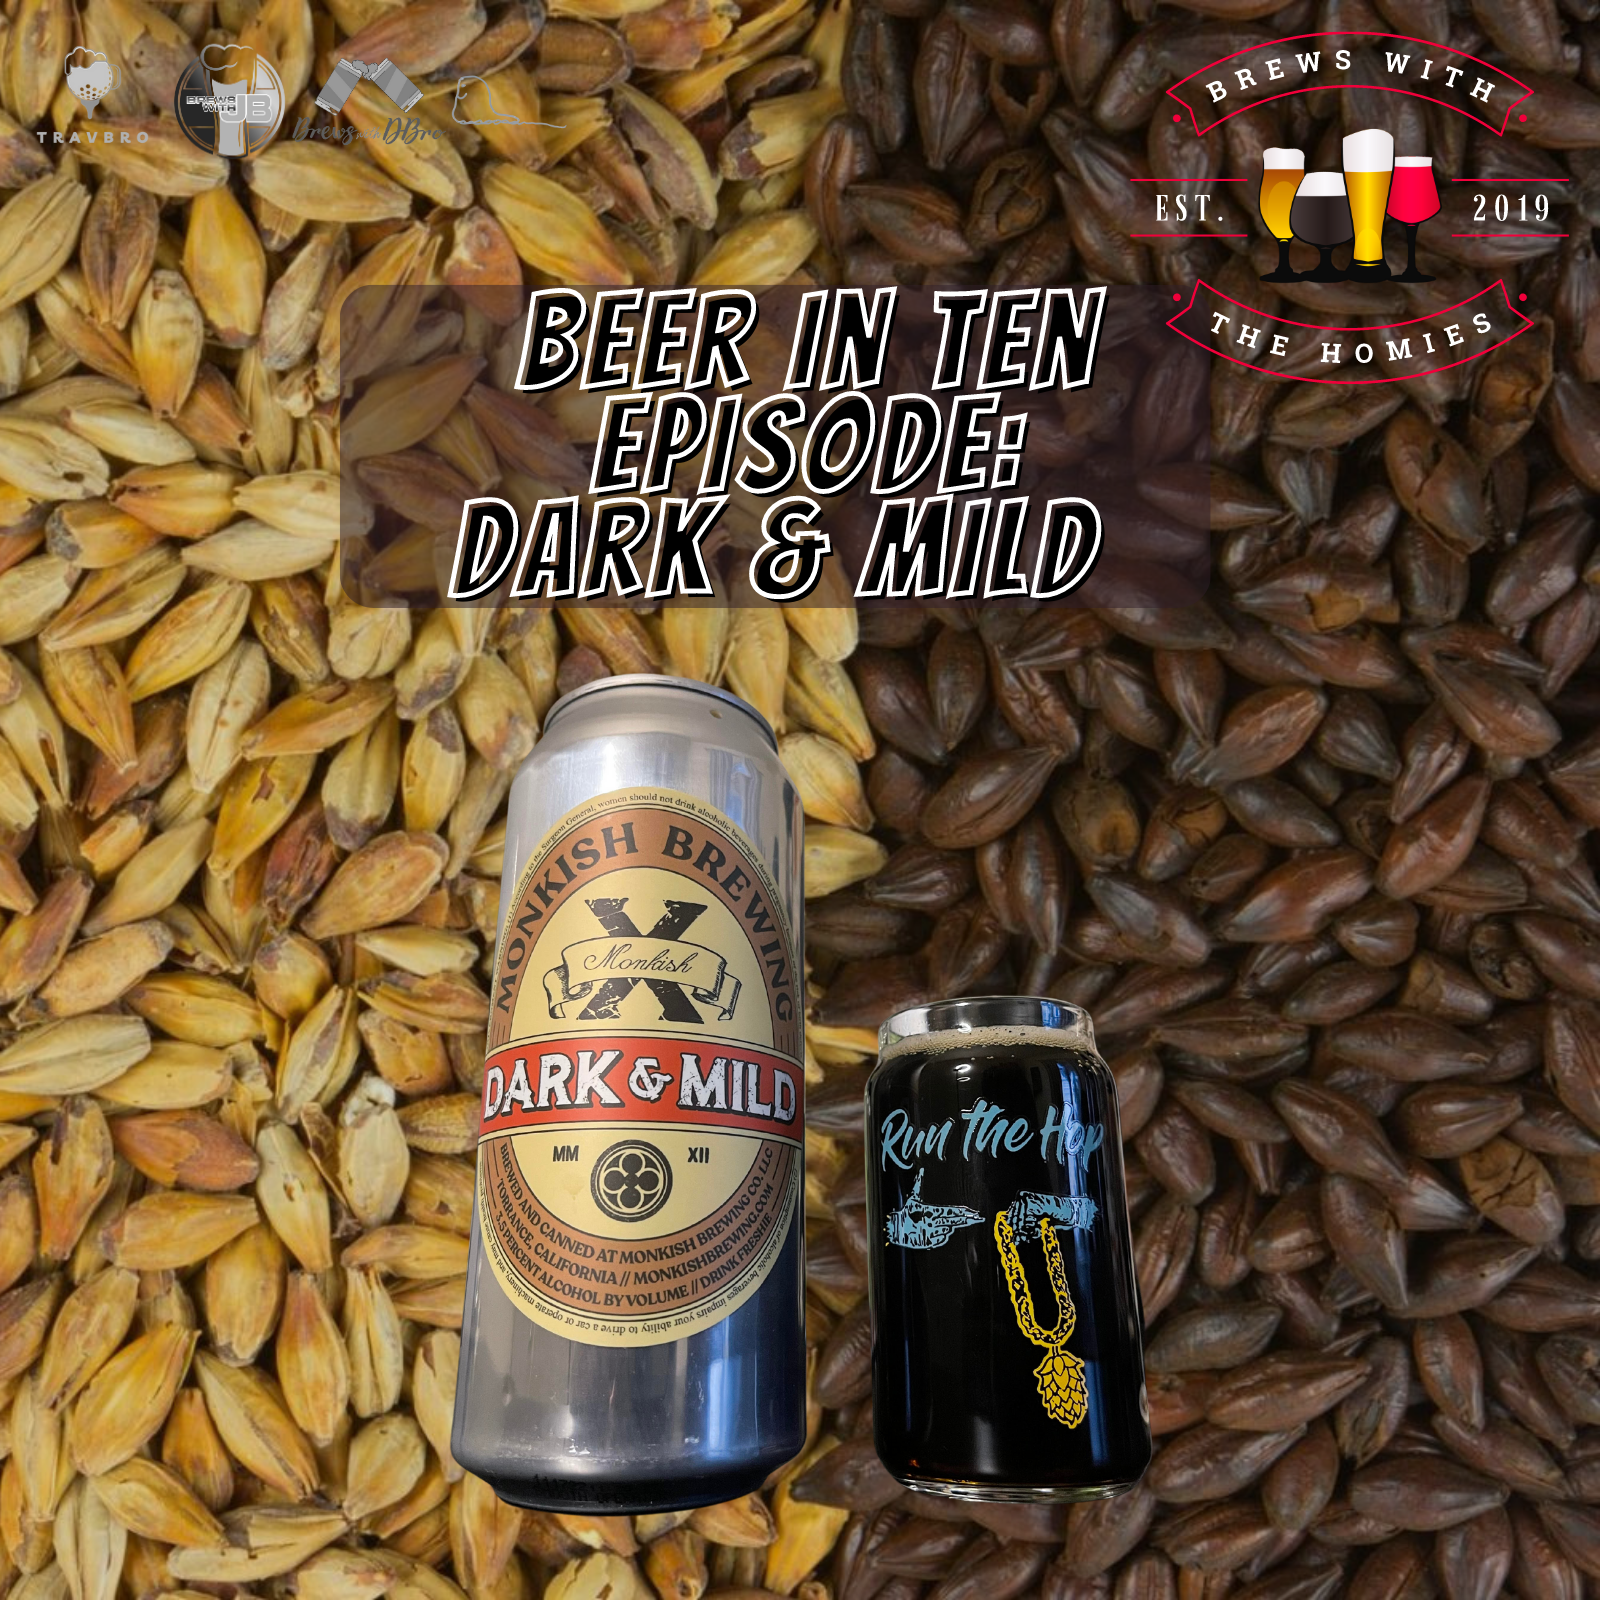 Beer in ten episode: Dark & Mild (Monkish Brewing)